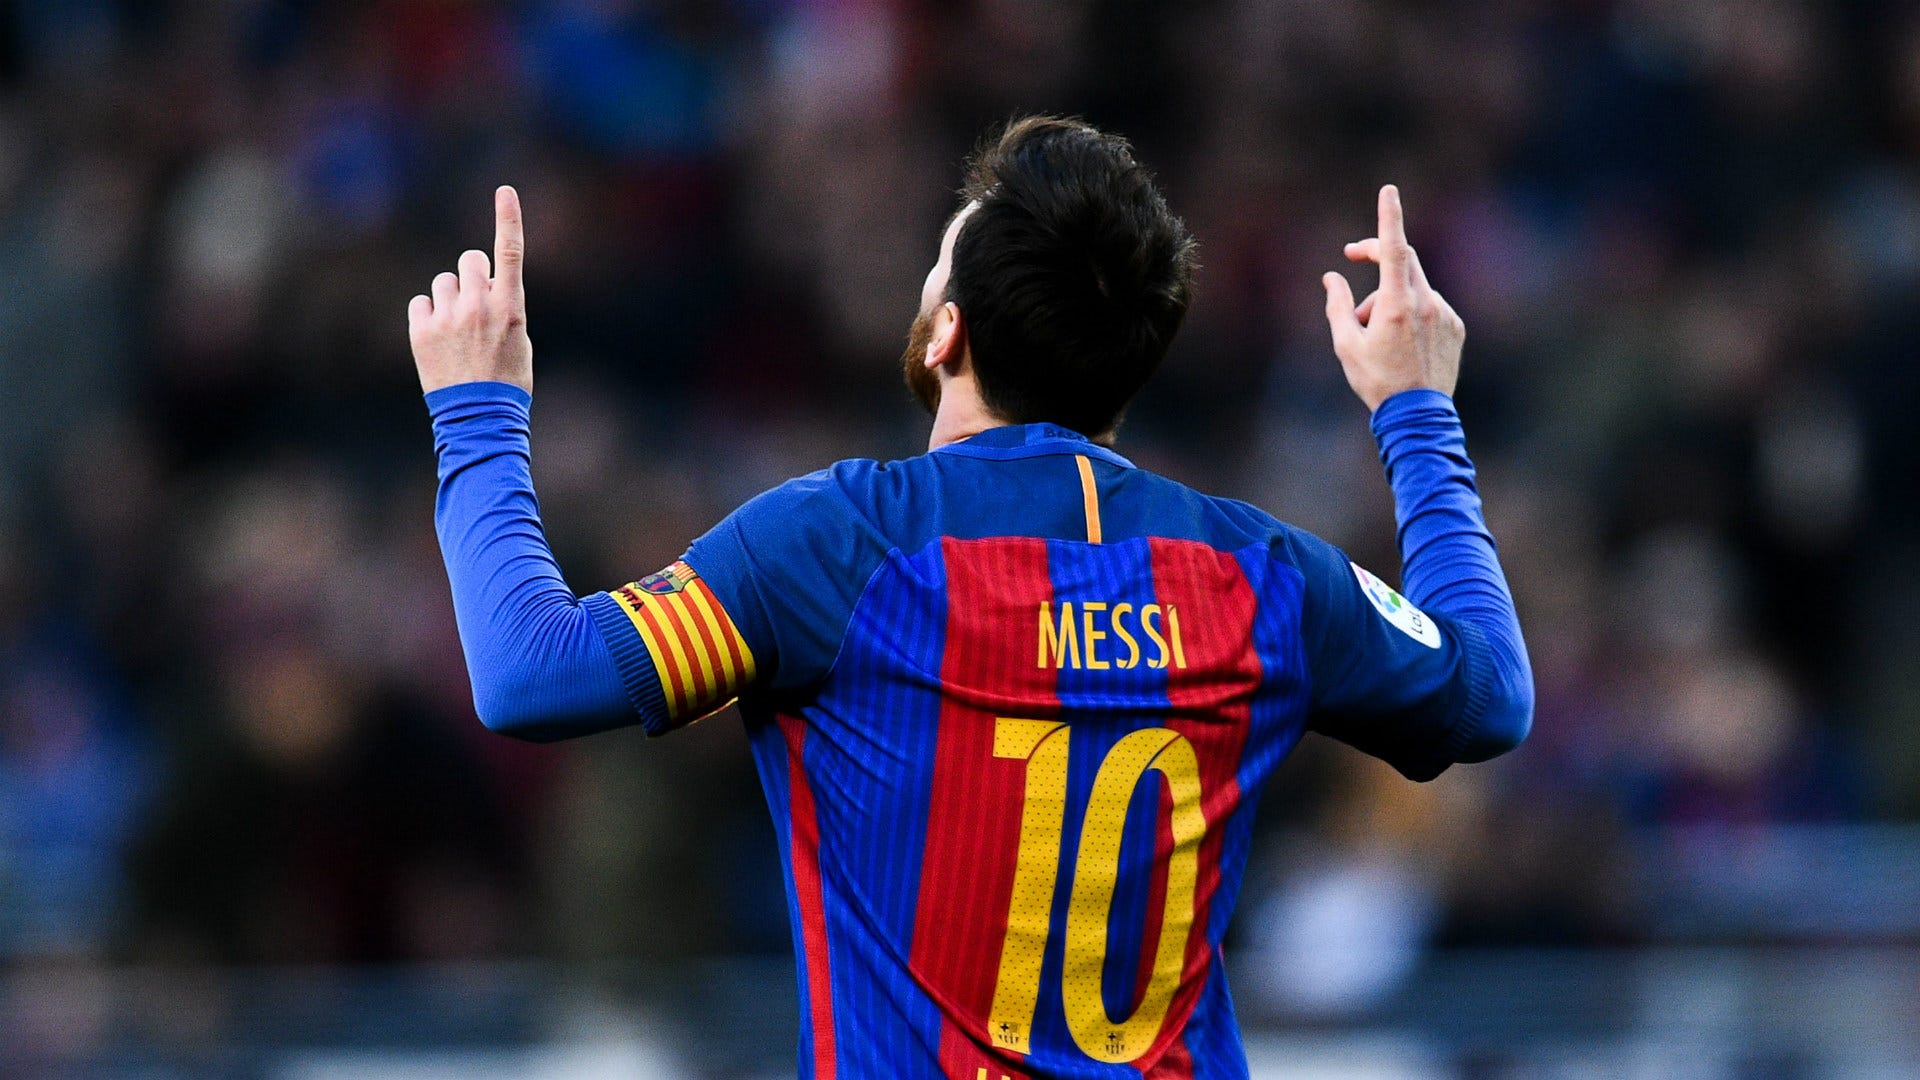 Với Messi hợp đồng mới ký kết, fans hâm mộ sẽ không thể bỏ qua tin tức mới nhất về siêu sao bóng đá này. Cùng nhau đón xem hình ảnh mới nhất của Messi trên nền áo Barcelona và xem anh ta có thể mang lại những thành công lớn cho đội bóng yêu thích không nhé!